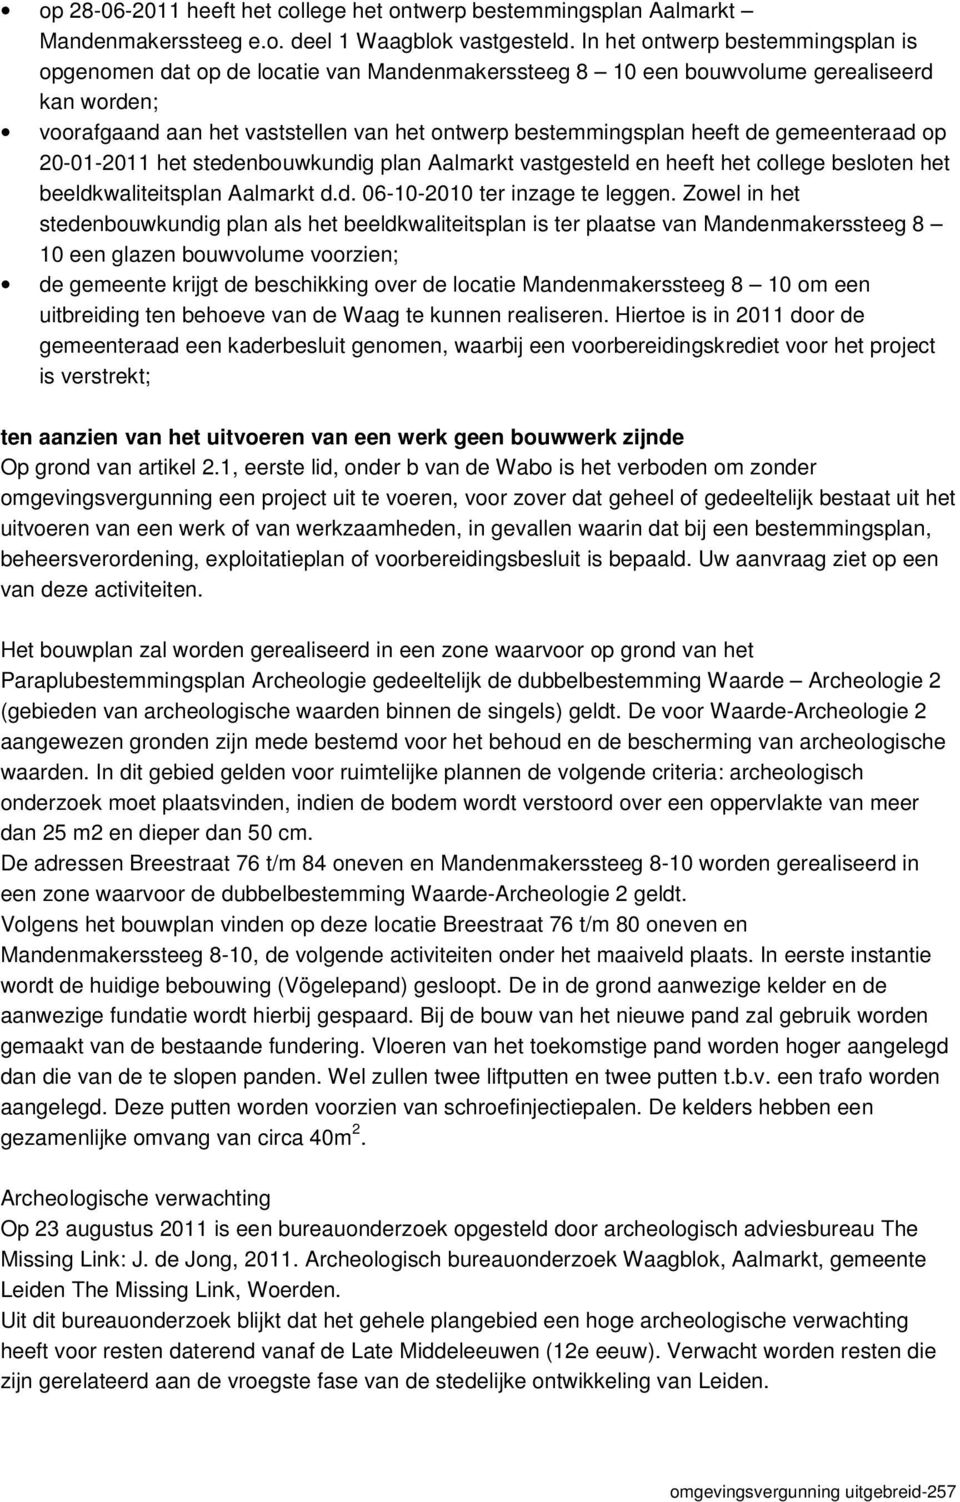 de gemeenteraad op 20-01-2011 het stedenbouwkundig plan Aalmarkt vastgesteld en heeft het college besloten het beeldkwaliteitsplan Aalmarkt d.d. 06-10-2010 ter inzage te leggen.